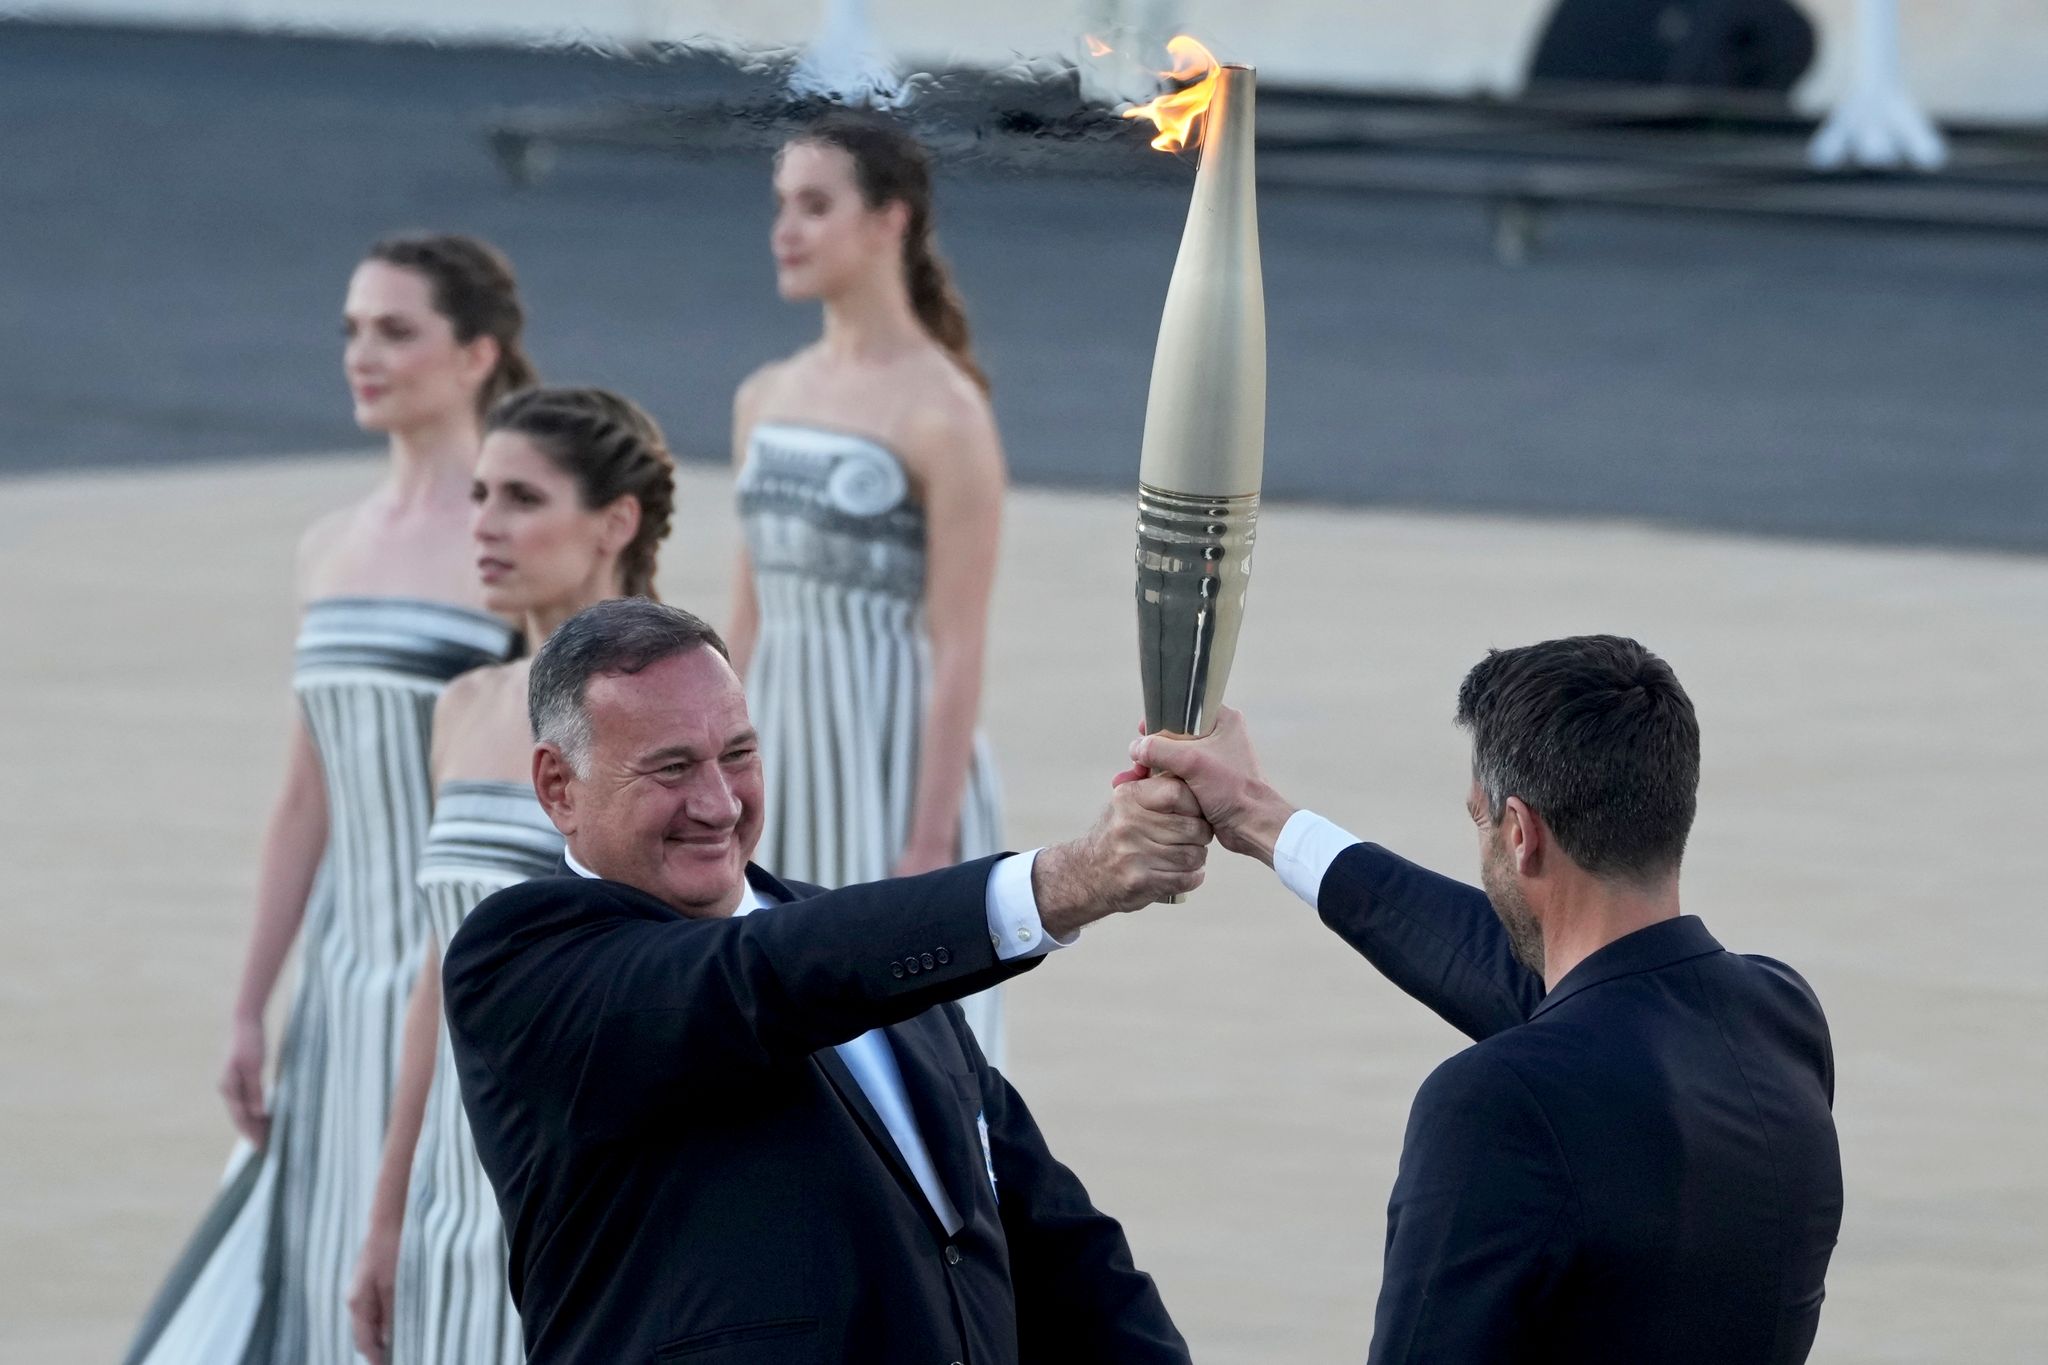 Griechen übergeben olympisches Feuer an Paris